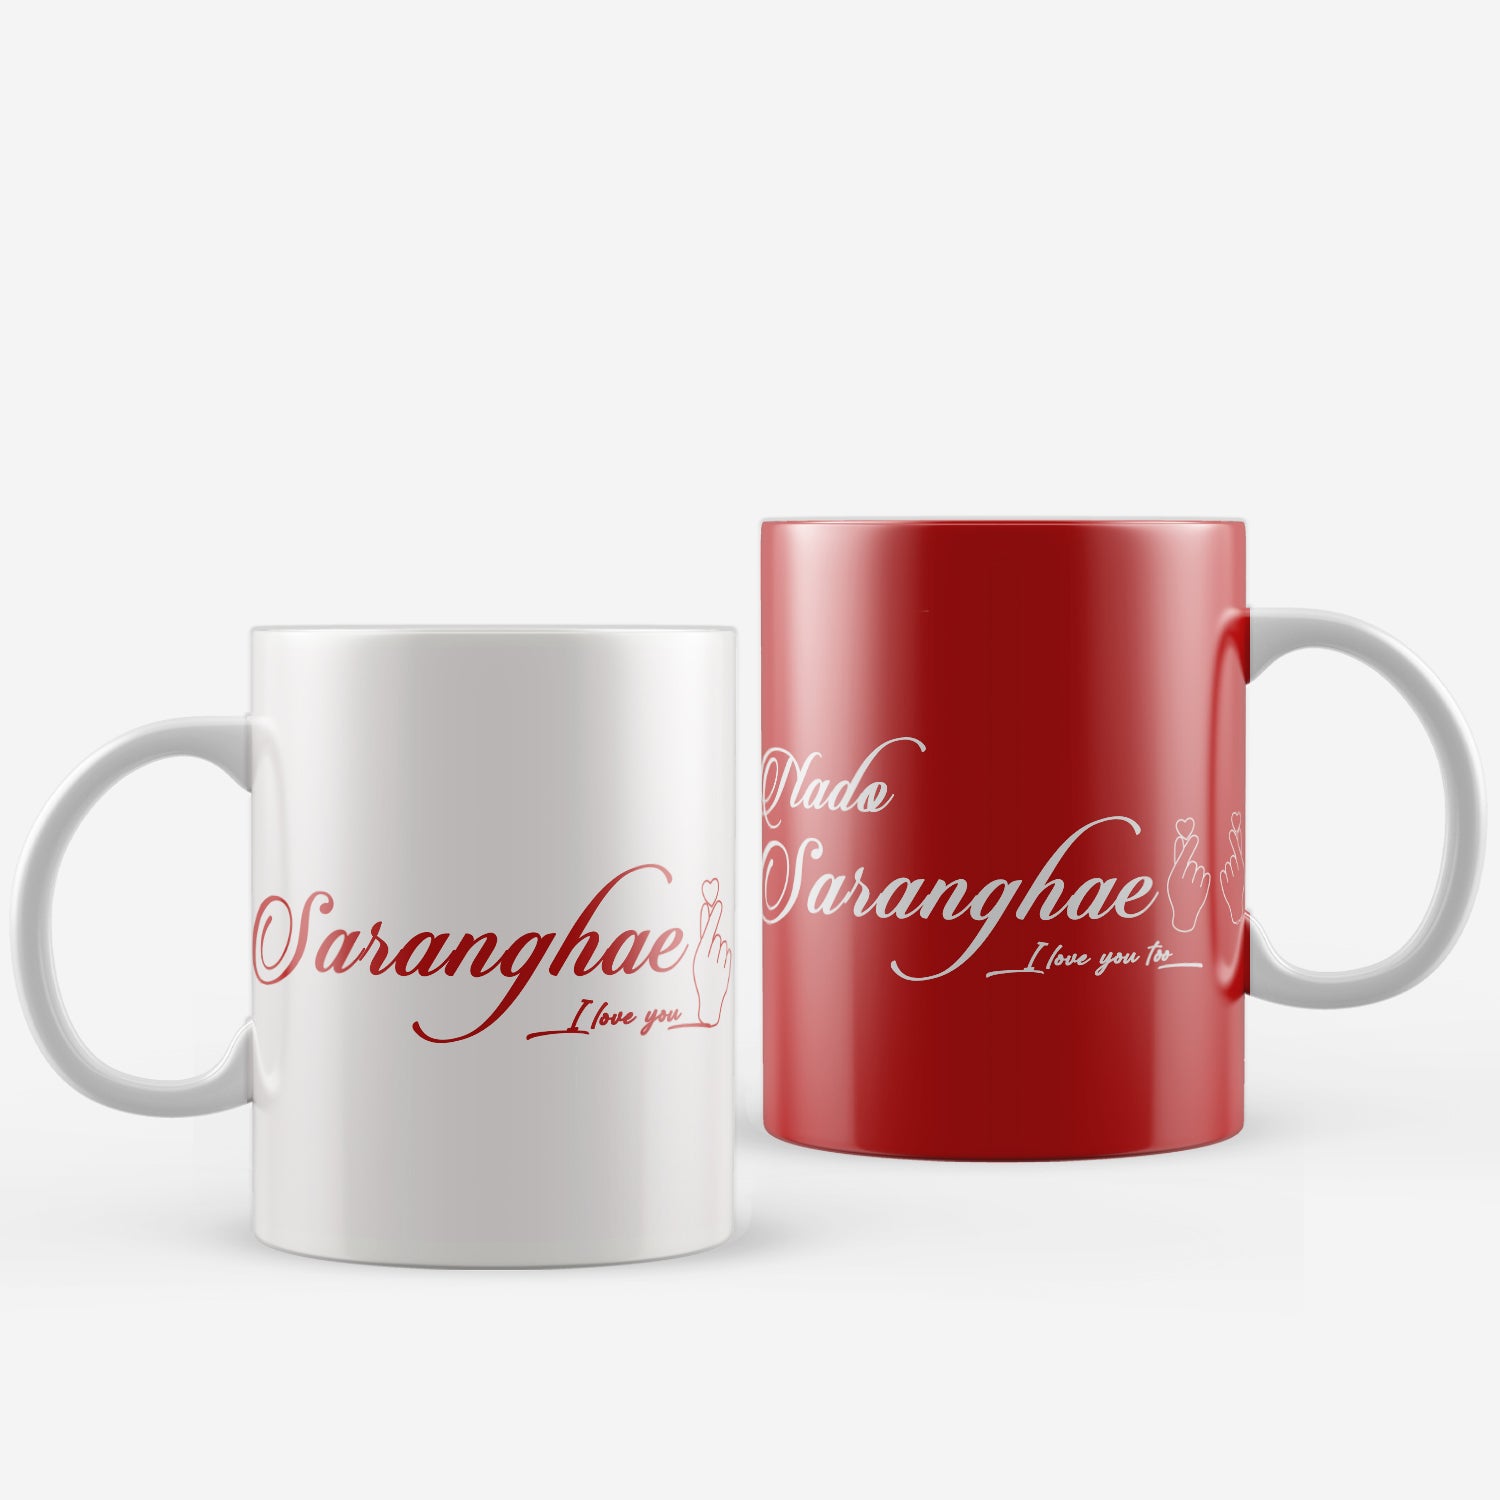 Set of 2 "Saranghae -Nado Saranghae" Valentine Love theme Ceramic Coffee Mugs 2